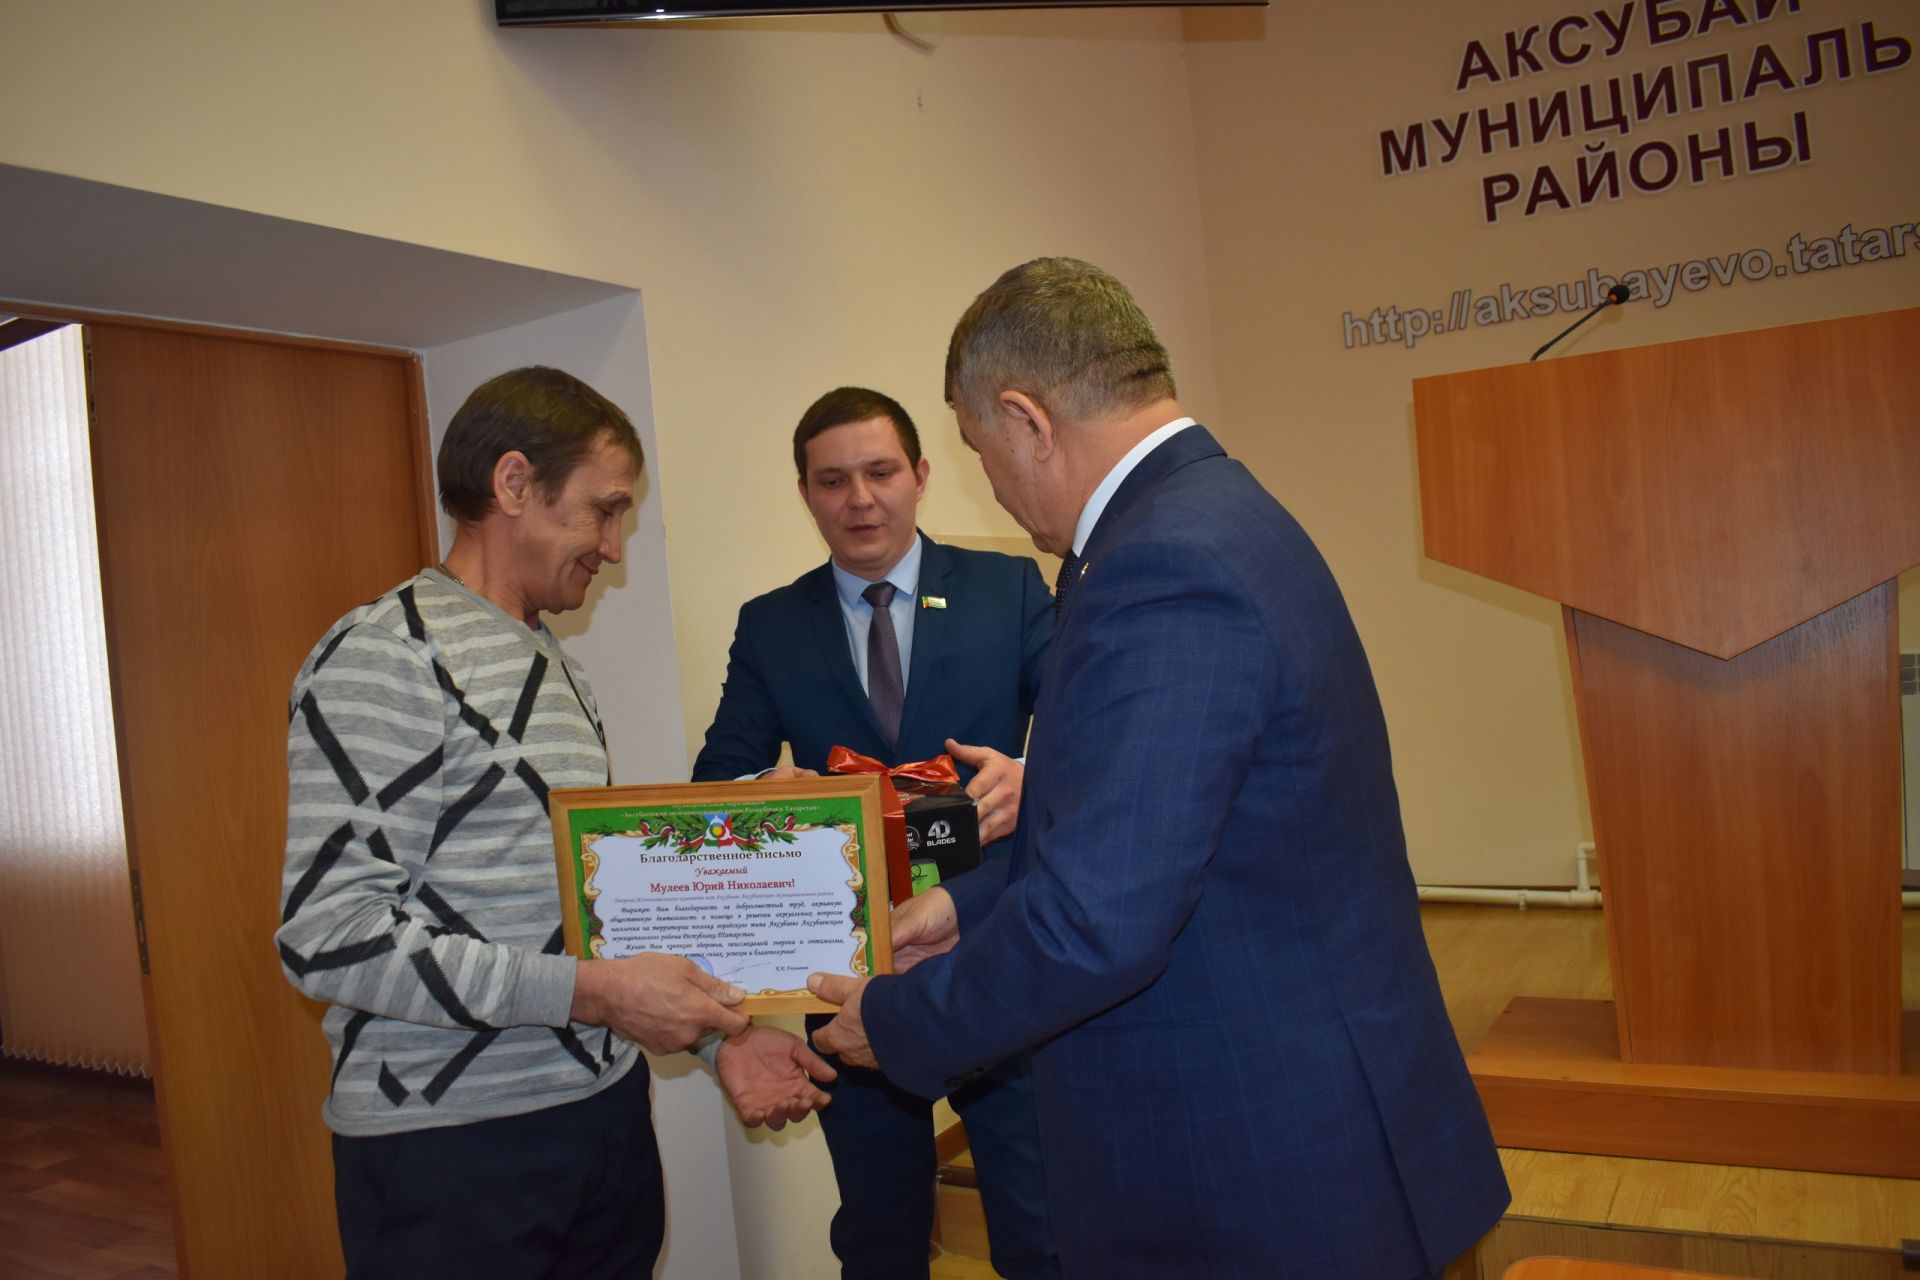 Сотрудника Аксубаевского исполкома наградили за добросовестный труд